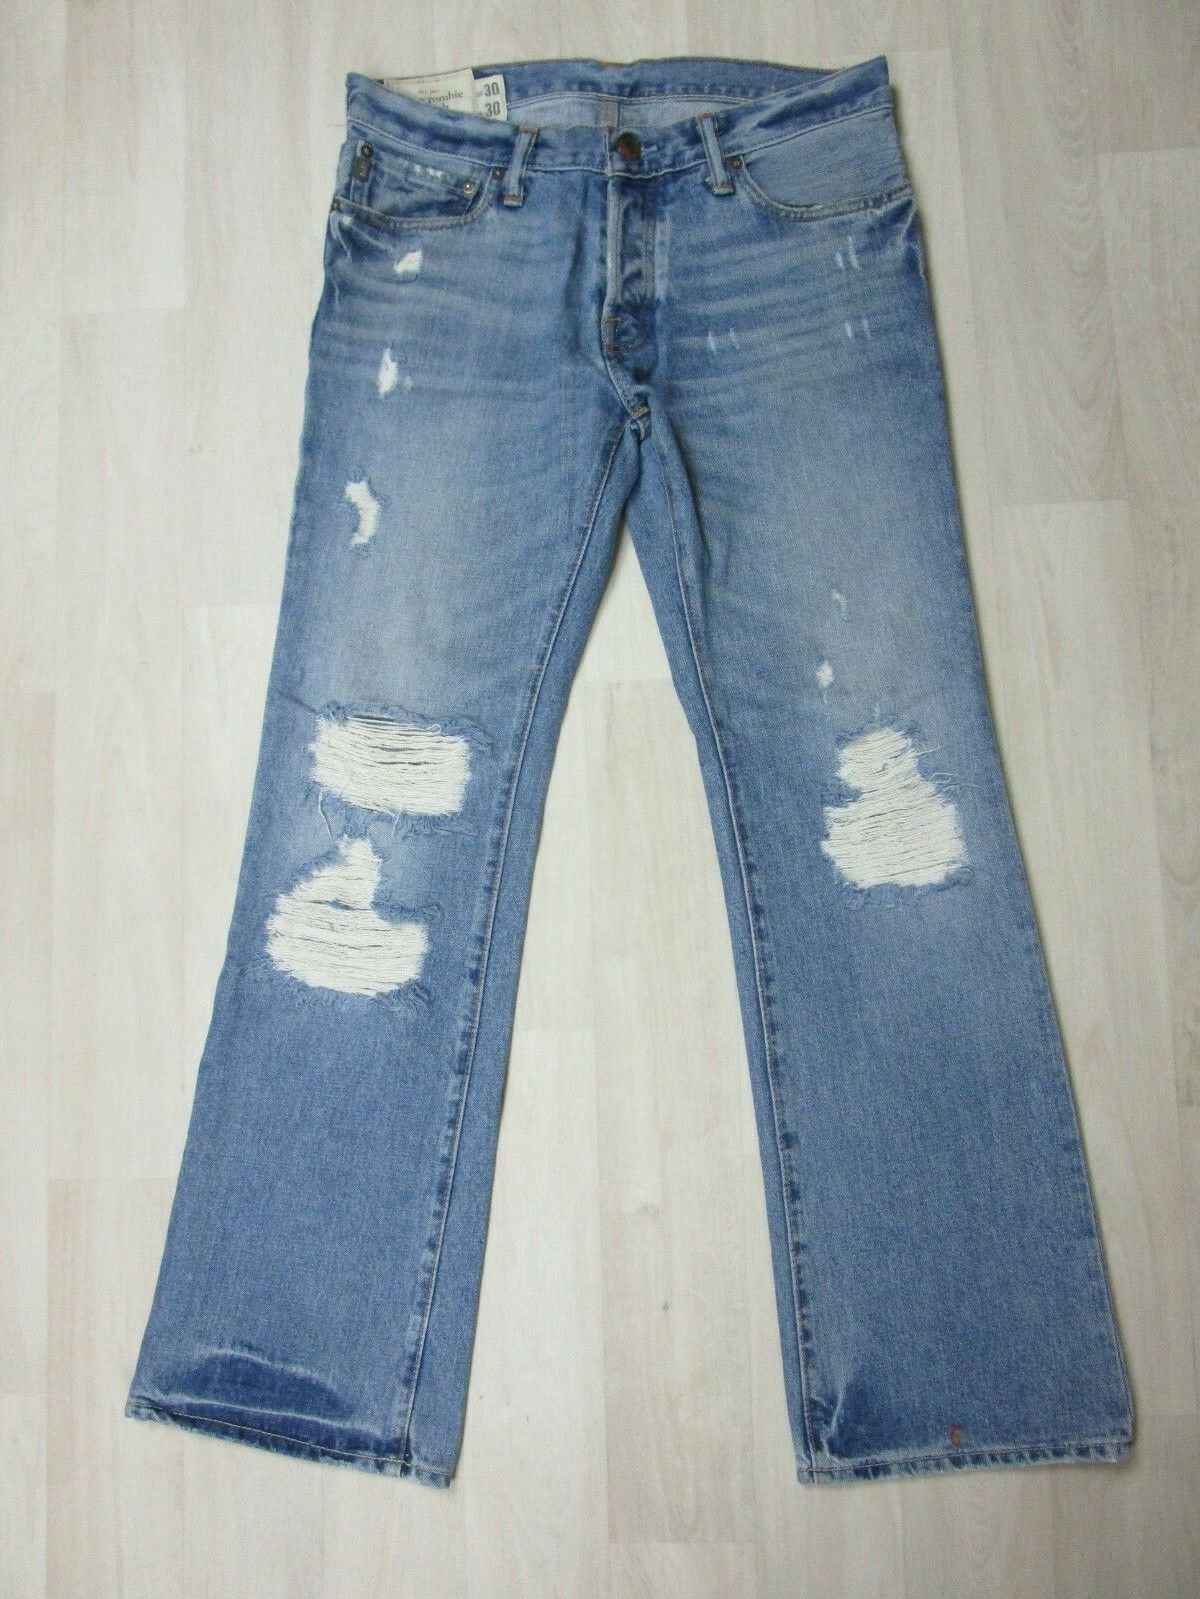 ABERCROMBIE & FITCH Jeans Bundle Size 30Wx30L Den… - image 5